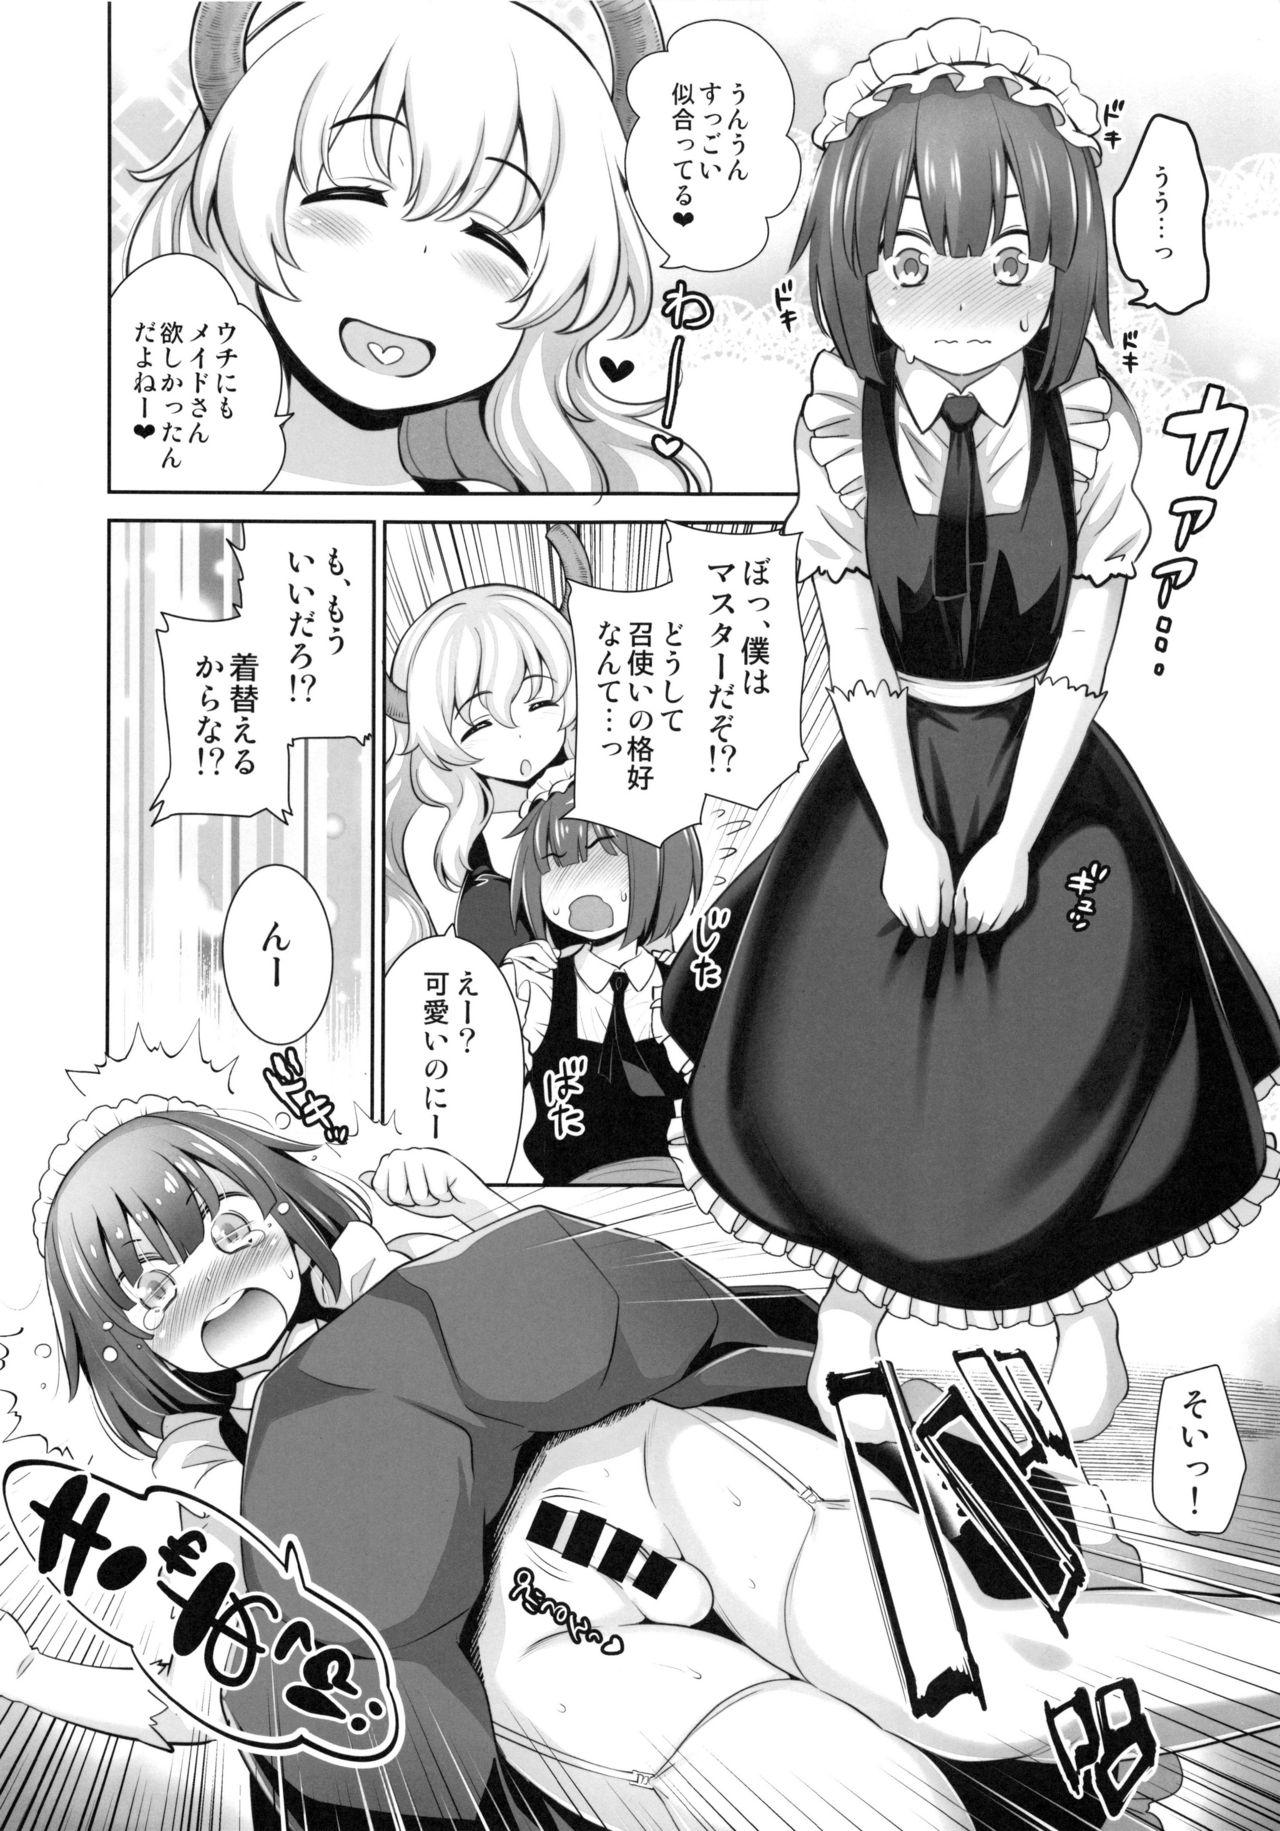 Girlnextdoor Shota Kui Ryuu to Chiisana Mahoutsukai - Kobayashi san chi no maid dragon Fucking - Page 11